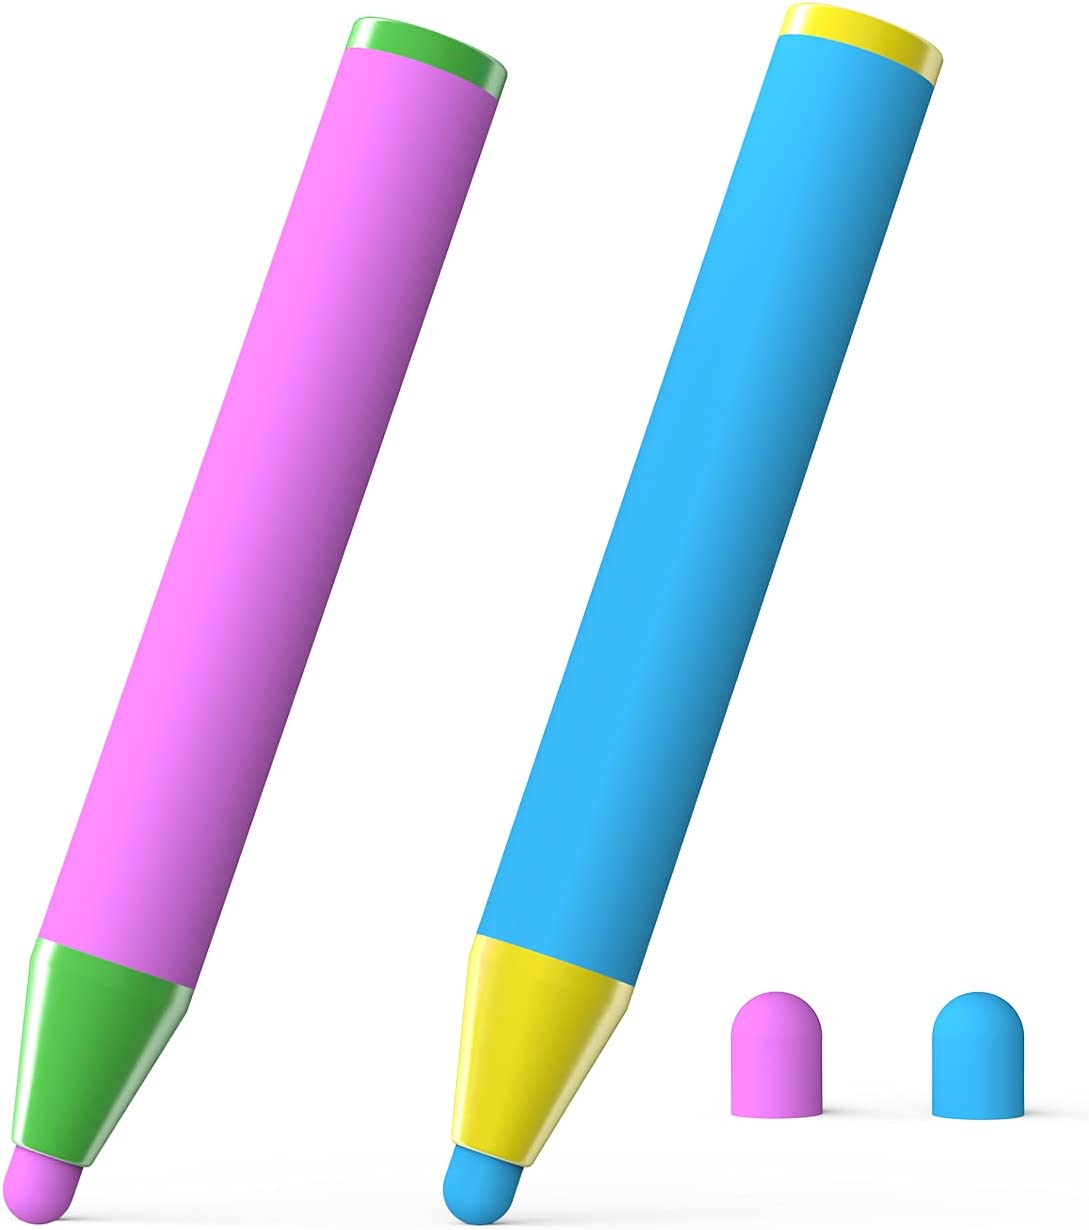 タッチペン 子供用スタイラスペン 握りやすい クレヨン形 ほとんどの絵描きAPPに対応 iPad/iPhone/Androidに対応 誕生日プレゼント クリスマ スギフト 2本組 ブルー ピンク